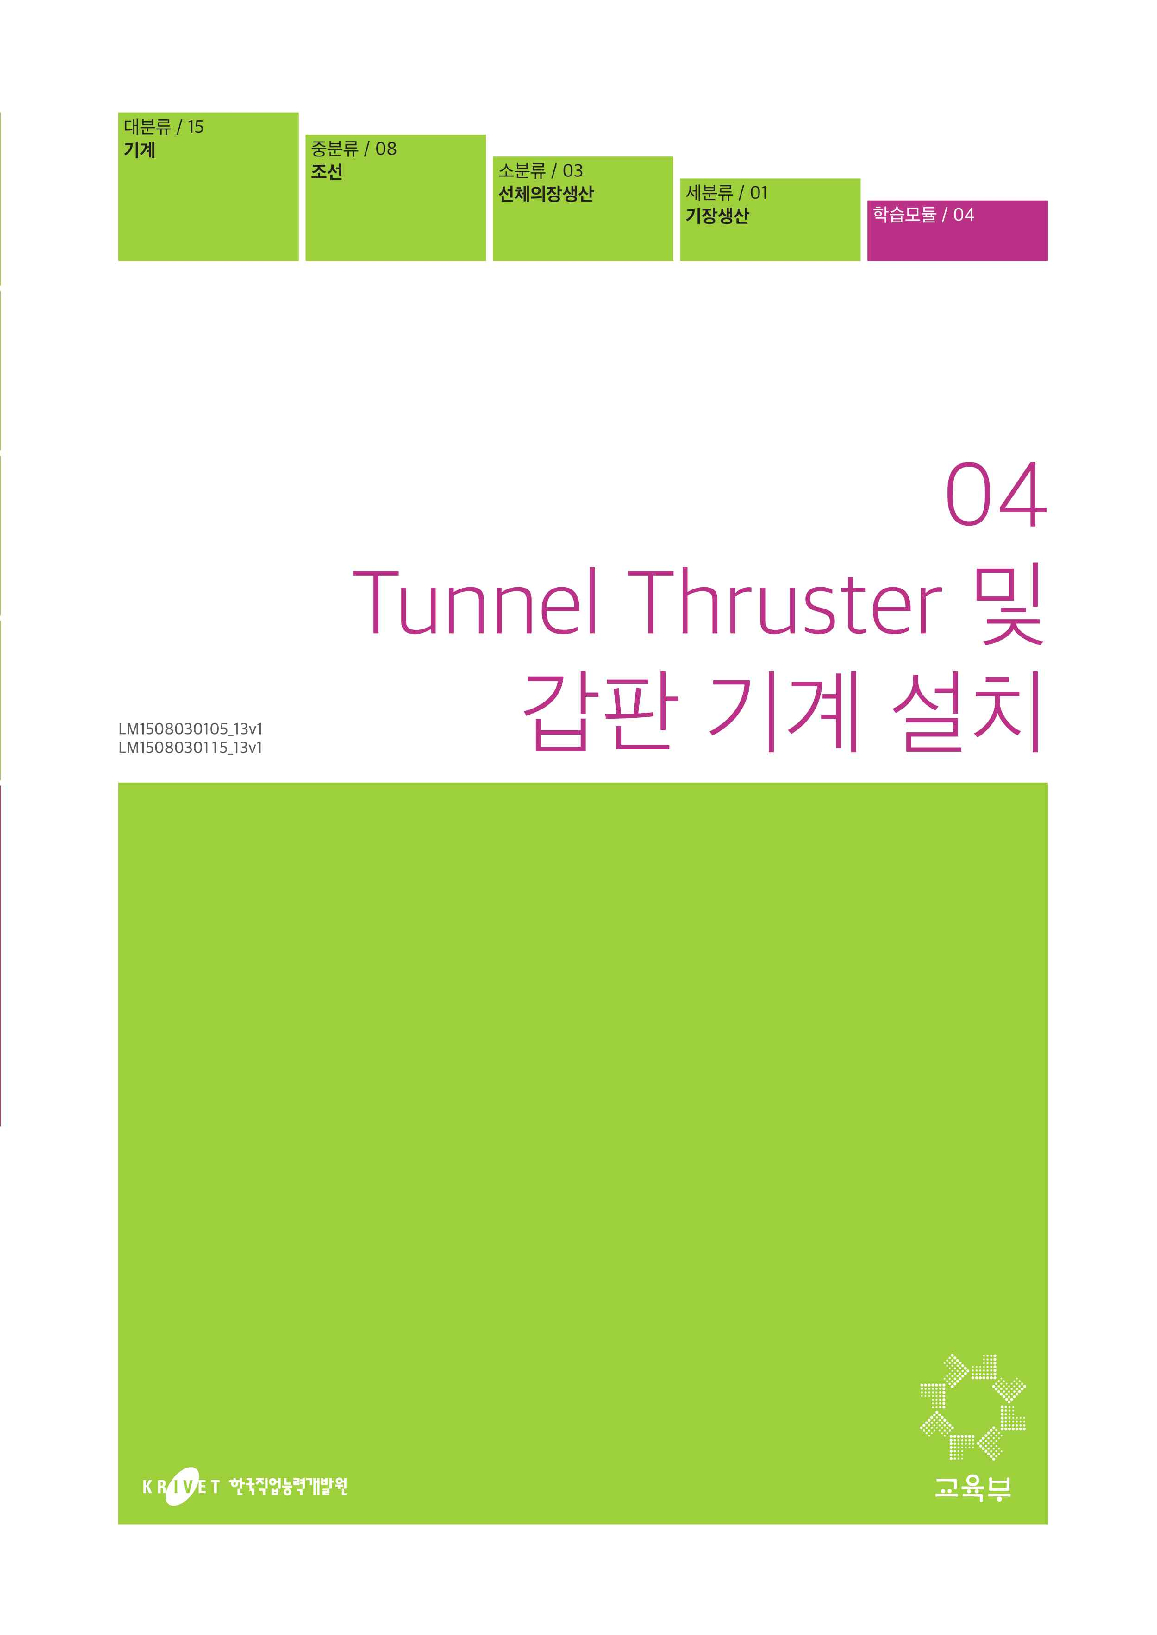 04. Tunnel Thruster 및 갑판기계설치